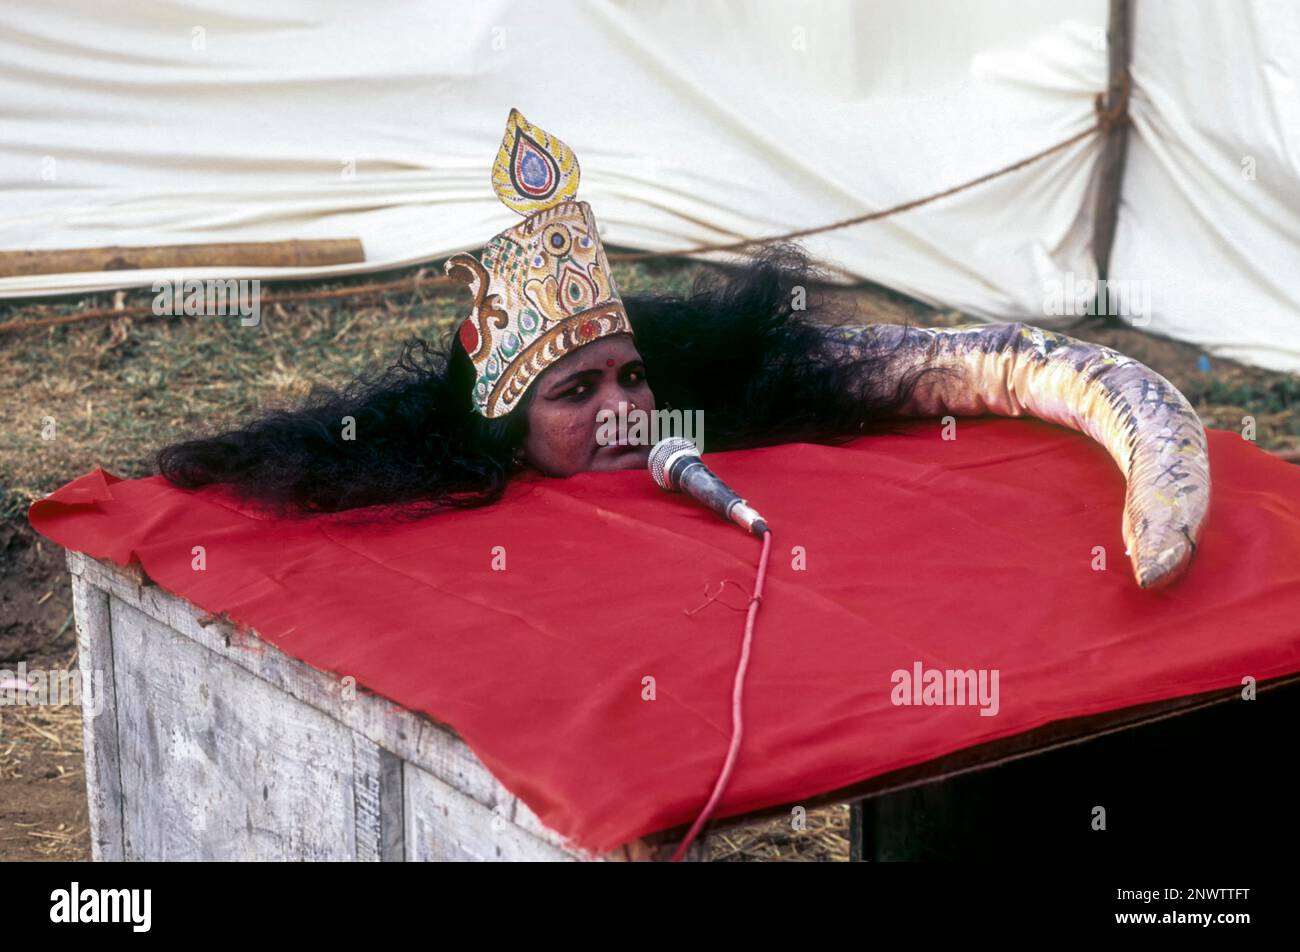 Eine Frau, die eine Zaubershow wie eine Schlange aufführt, in einer Dorfausstellung, kerala, Indien, Asien Stockfoto